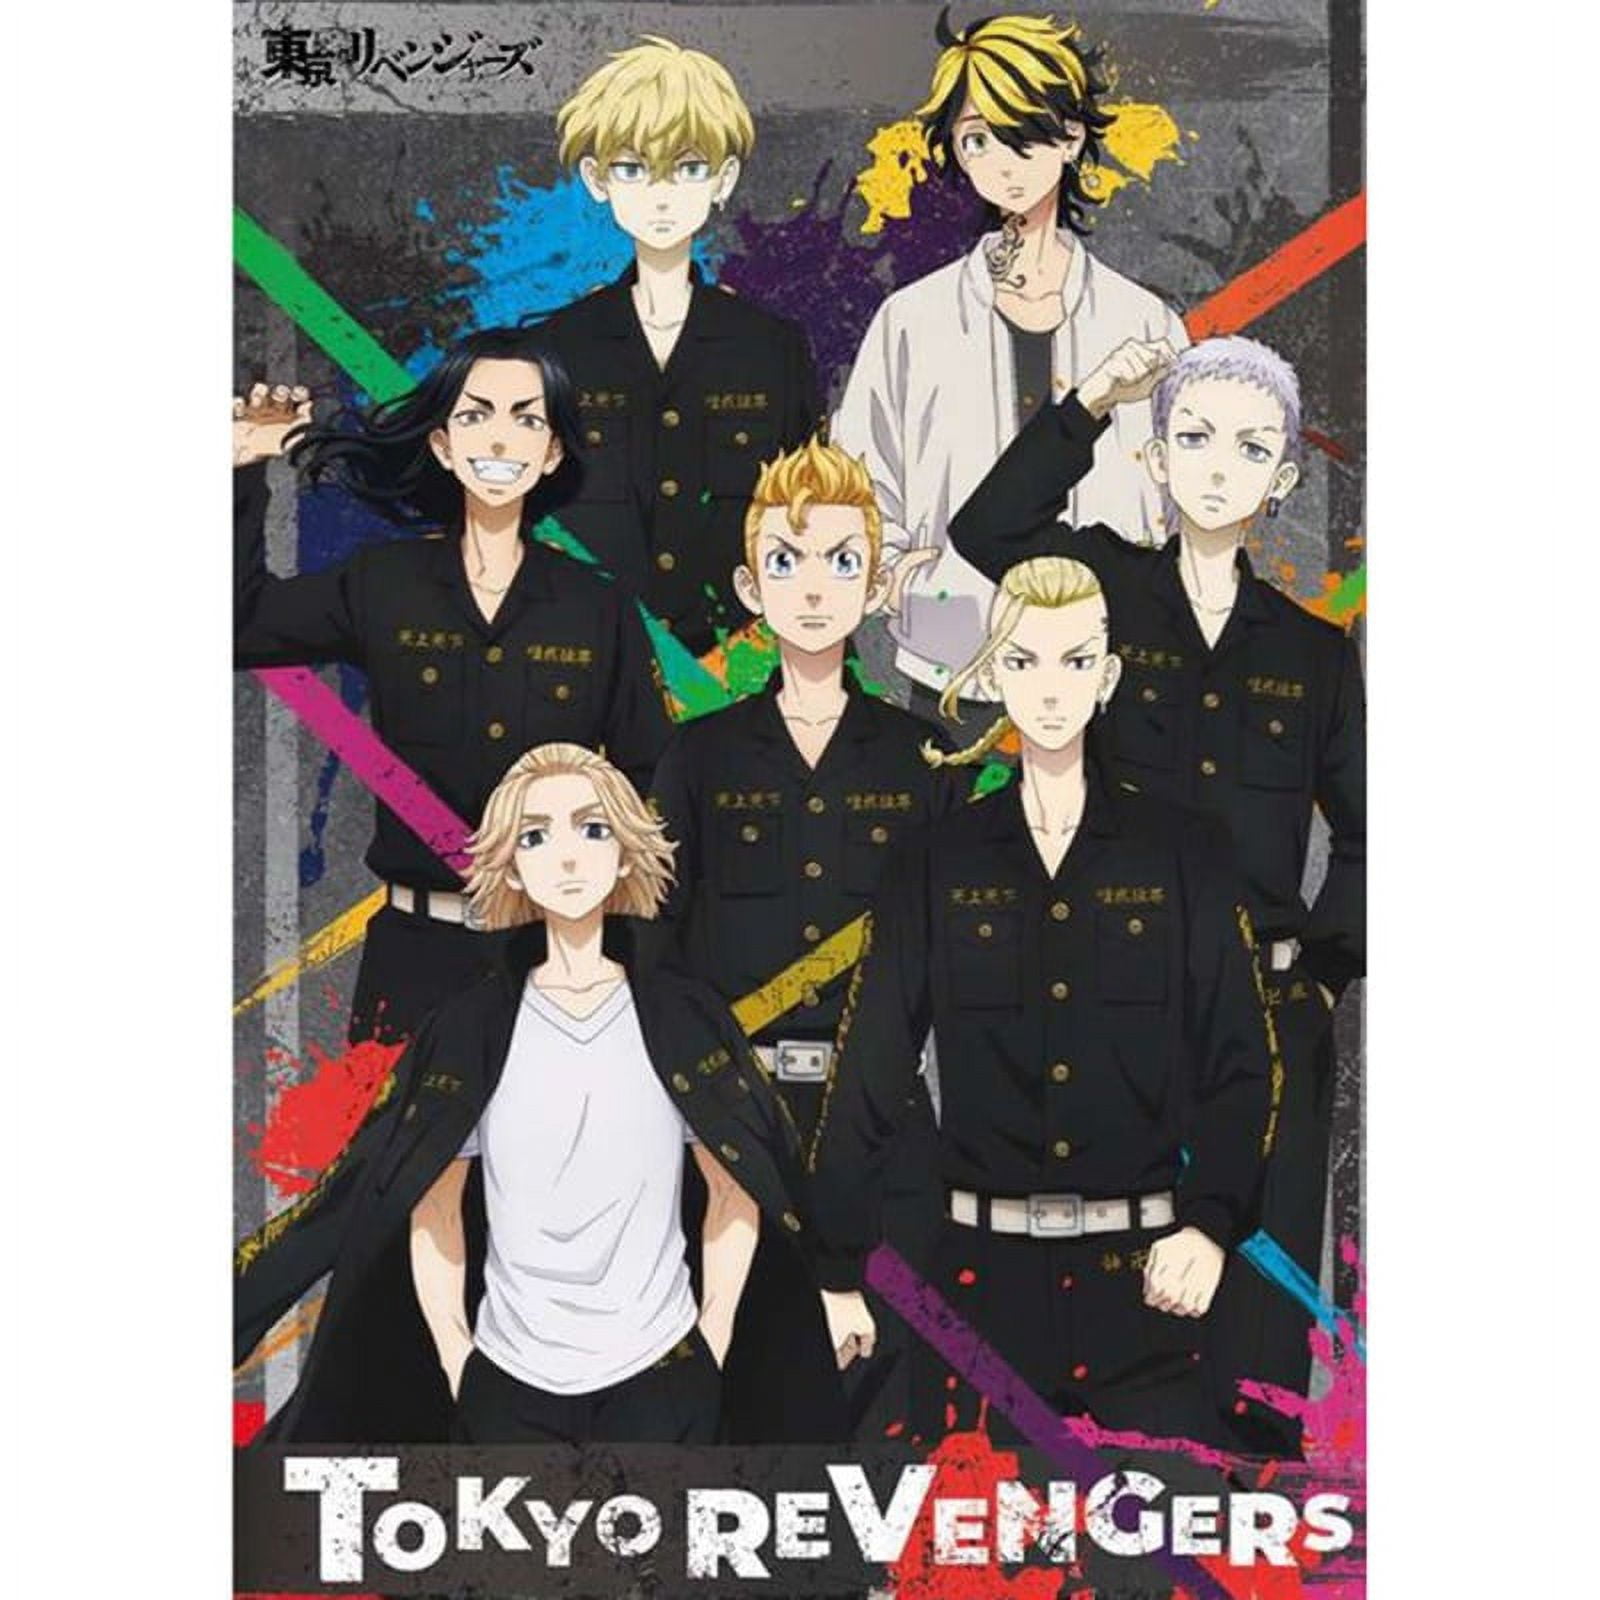 Anime Tokyo revengers  Anime, Tokyo, Popular anime